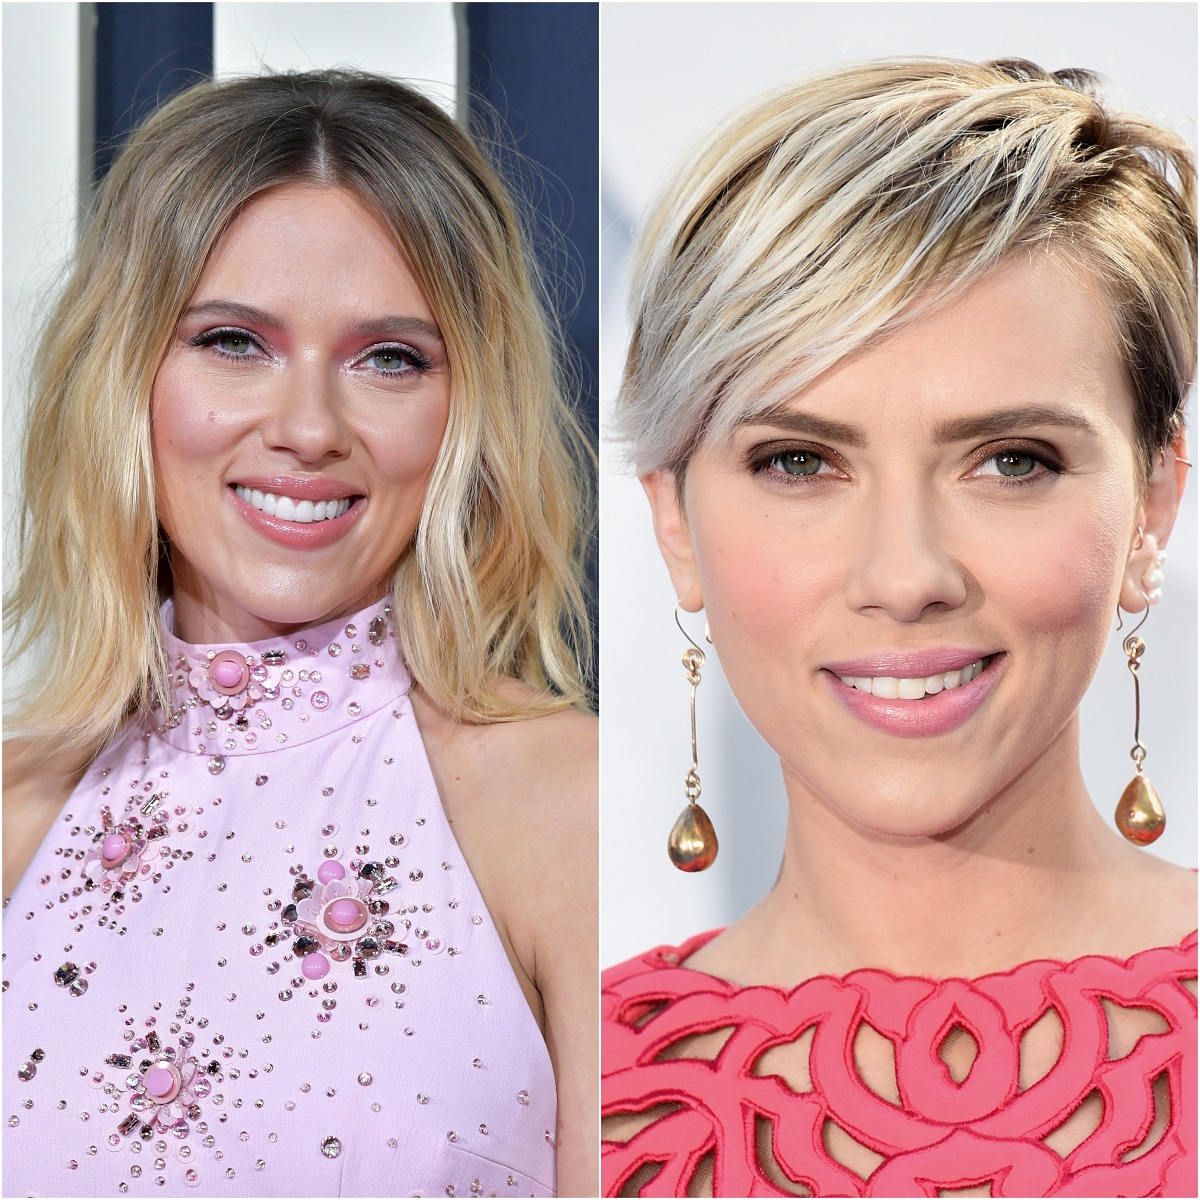 colaj cu actrița Scarlett Johansson care este blondă și are părul lung într-o imagine, iar în cealaltă scurt, tuns pixie